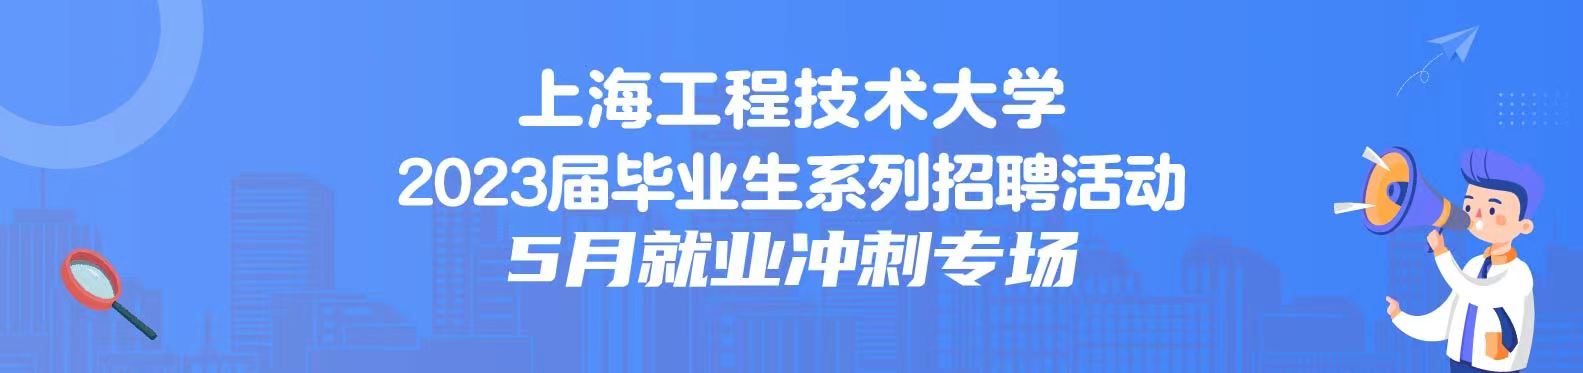 【线上双选会】 上海工程技术大学2023届毕业生5月就业冲刺专场